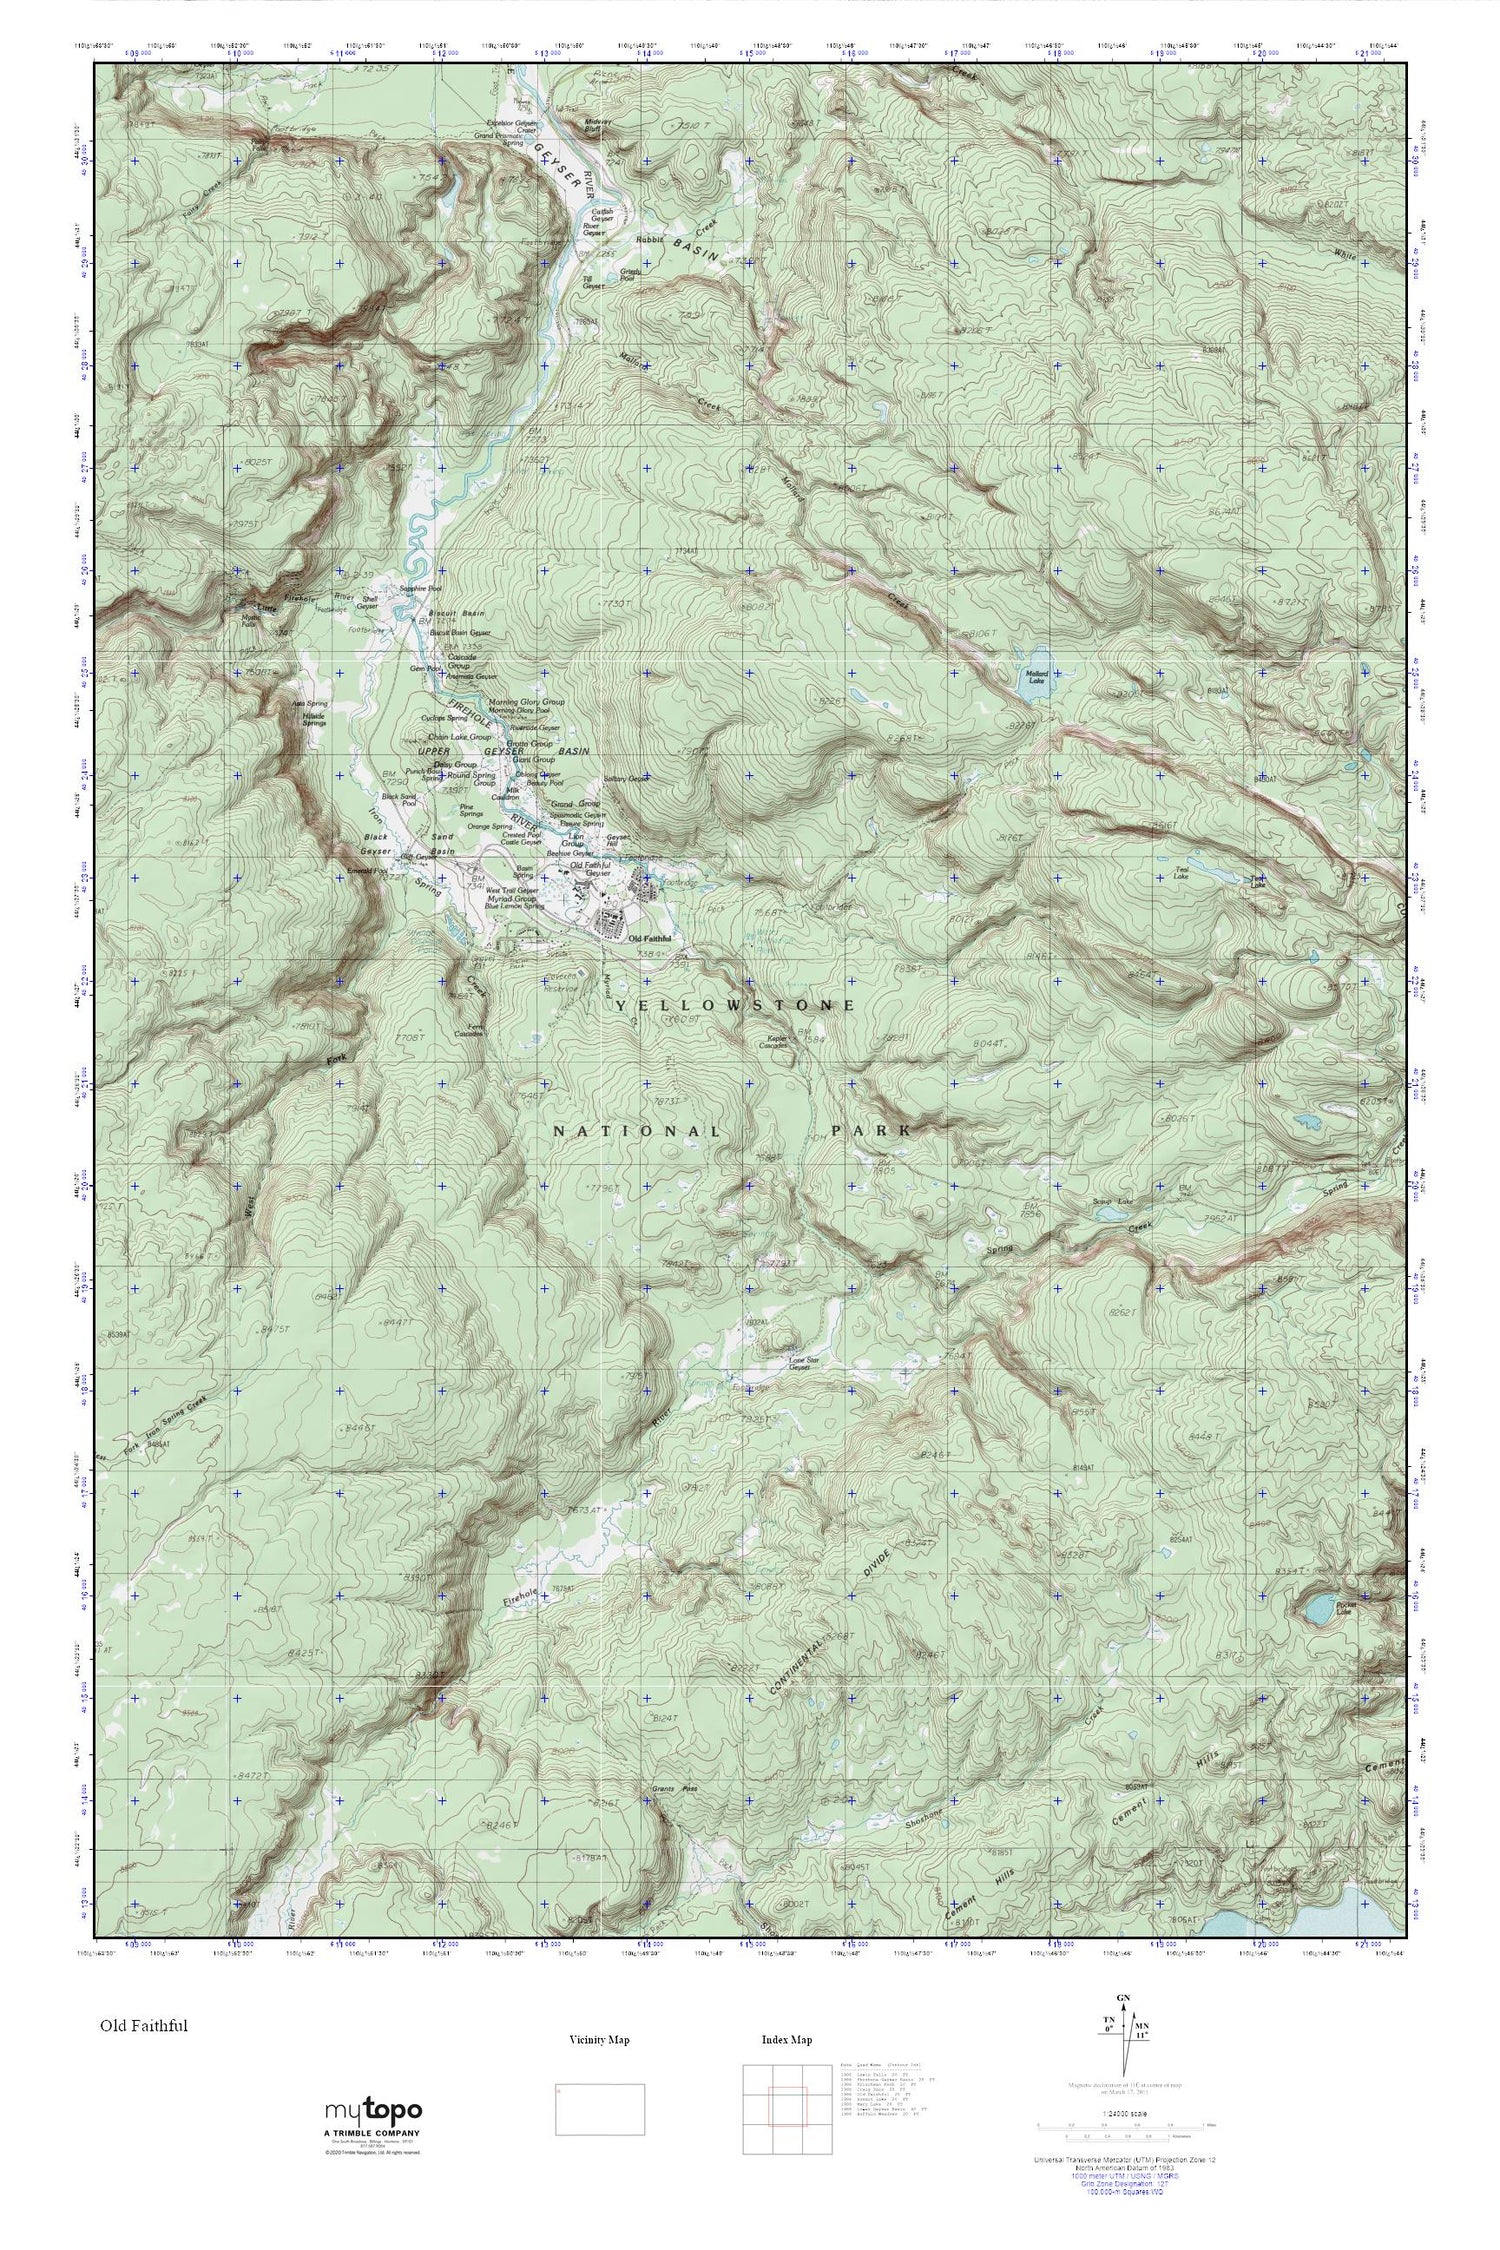 Old Faithful MyTopo Explorer Series Map Image